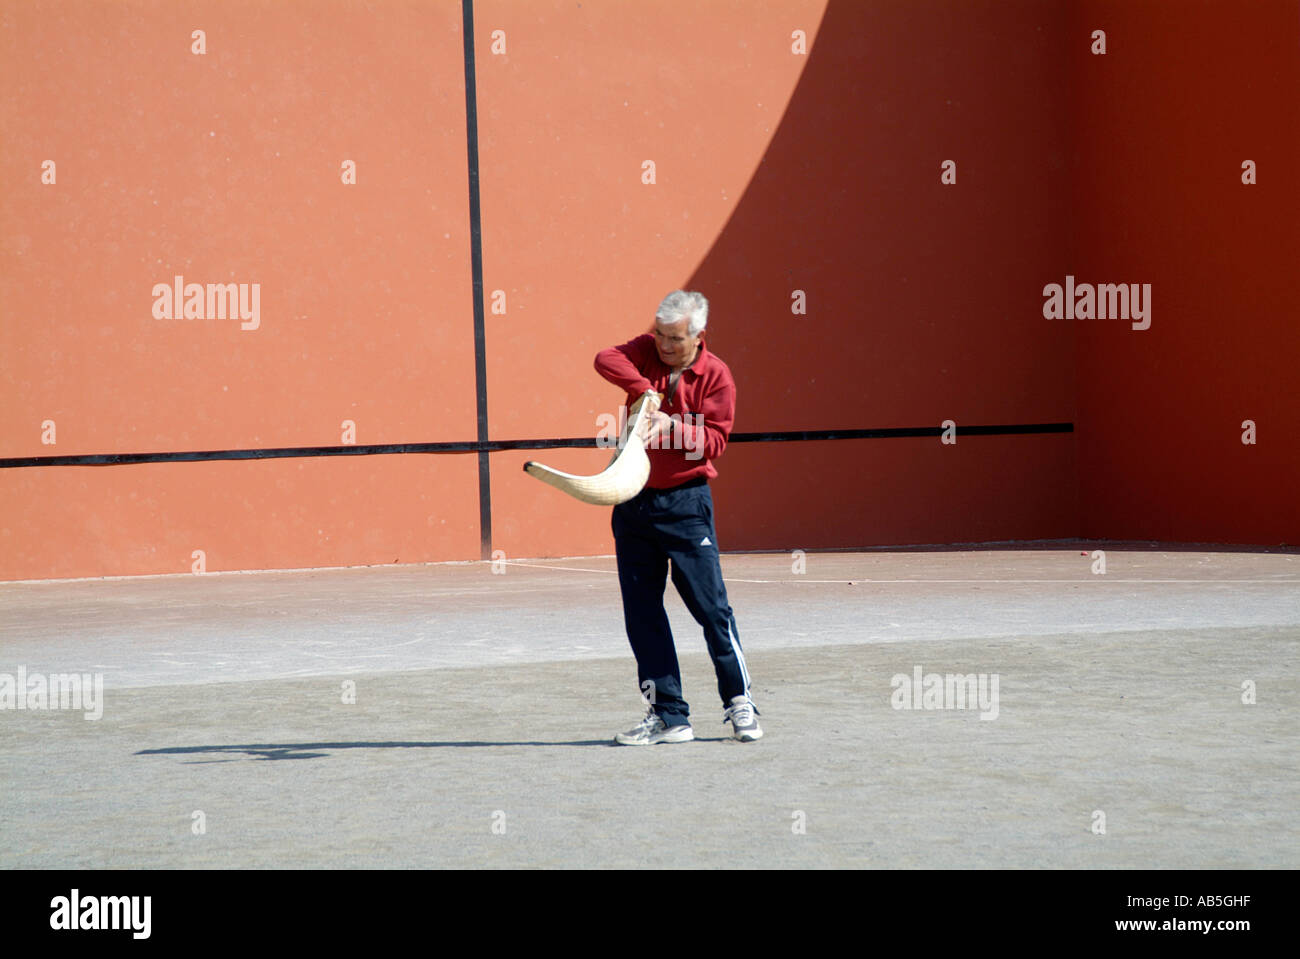 Le basque, sport, comme, squash, raquete, ball, jeu, jouer, joueur, jouant,  région, régionales, du nord, de l'Espagne, le sud, la France Photo Stock -  Alamy